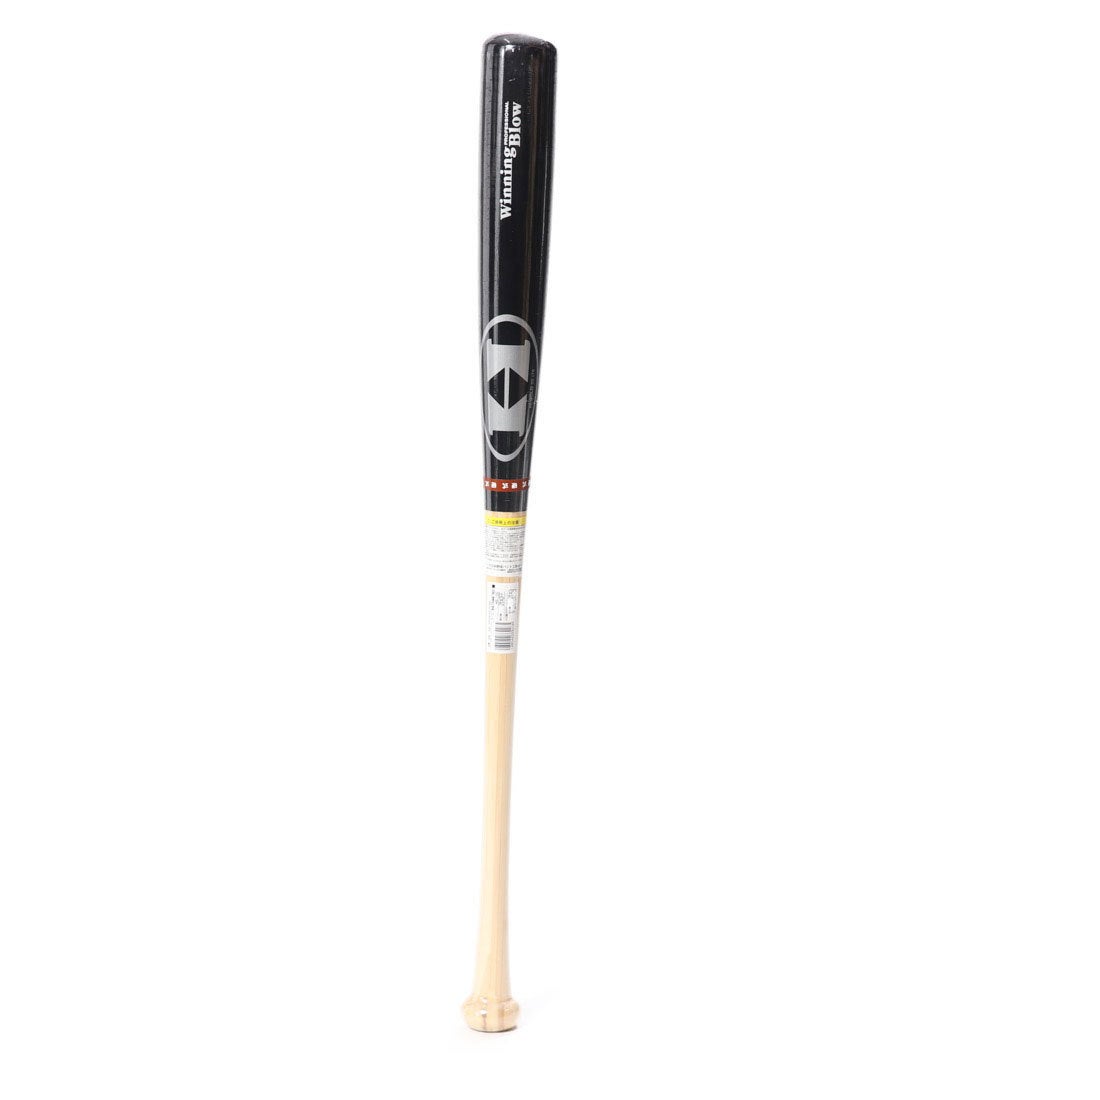 ハイゴールド Hi-GOLD 硬式野球 バット 硬式用竹バット(スタンダード型) APB-8000B